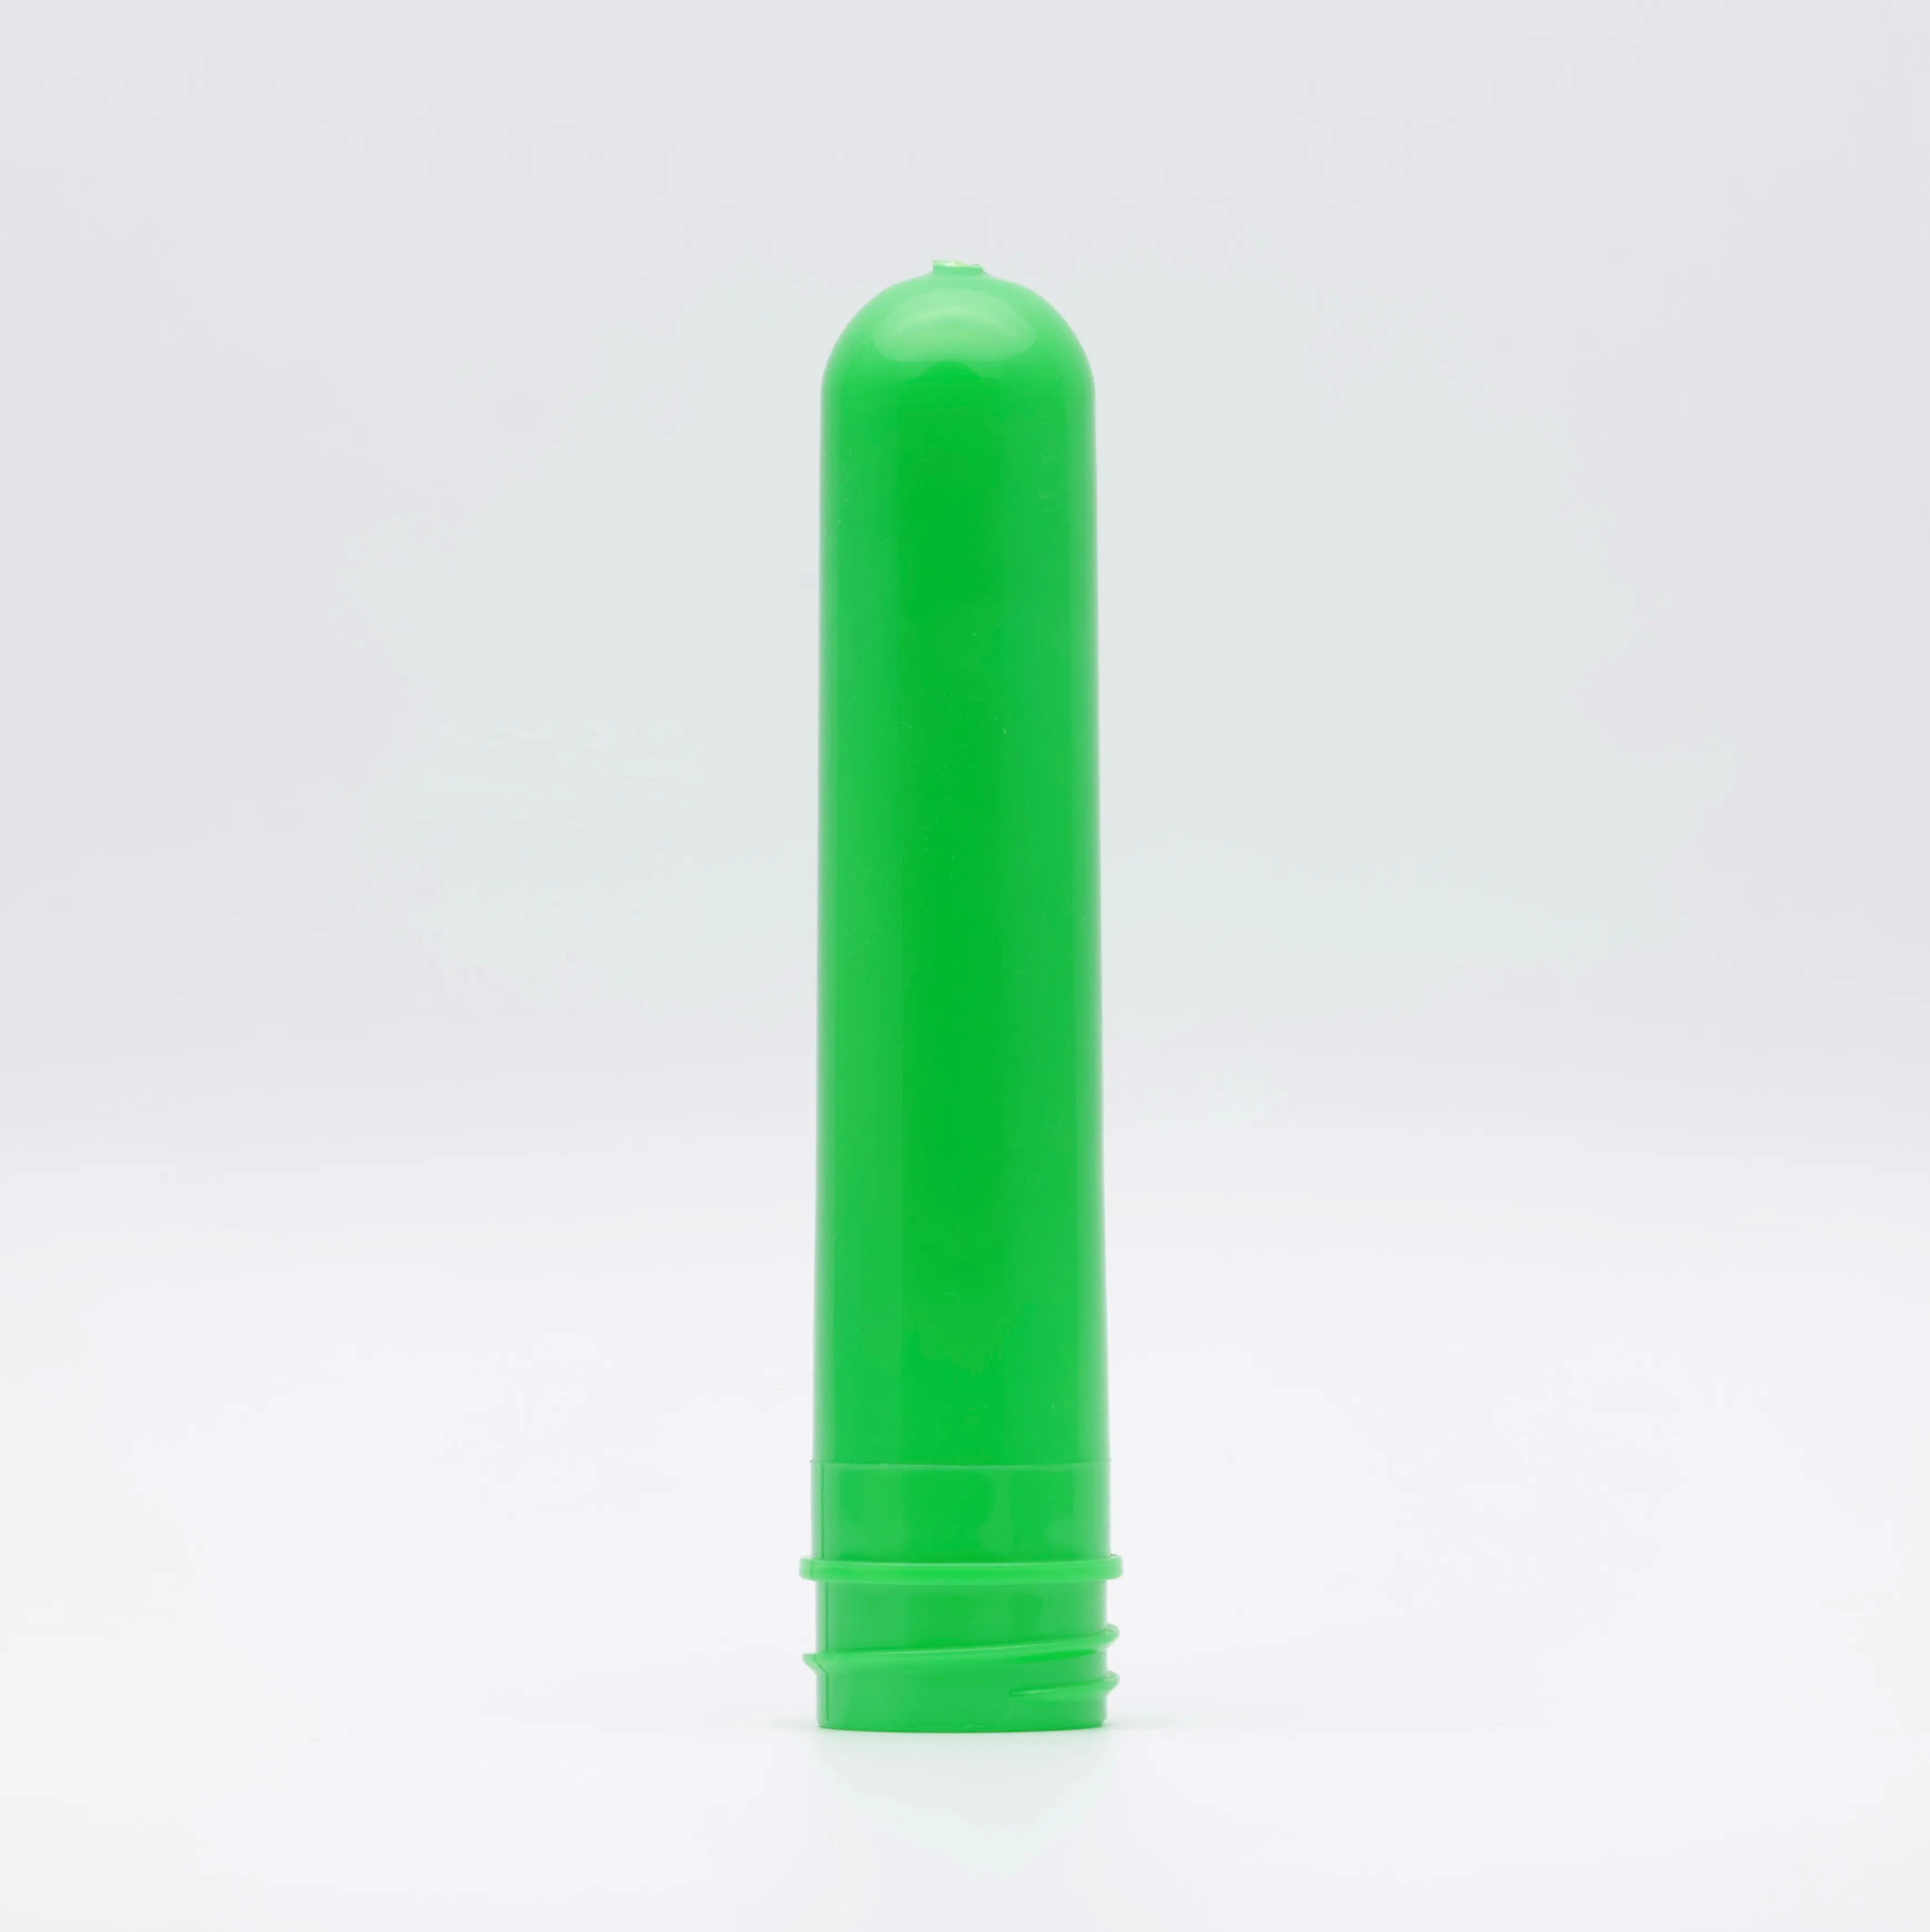 Venta caliente de plástico 28/410 cuello 30g necesidades diarias producto preformado para Gel de ducha Gottle